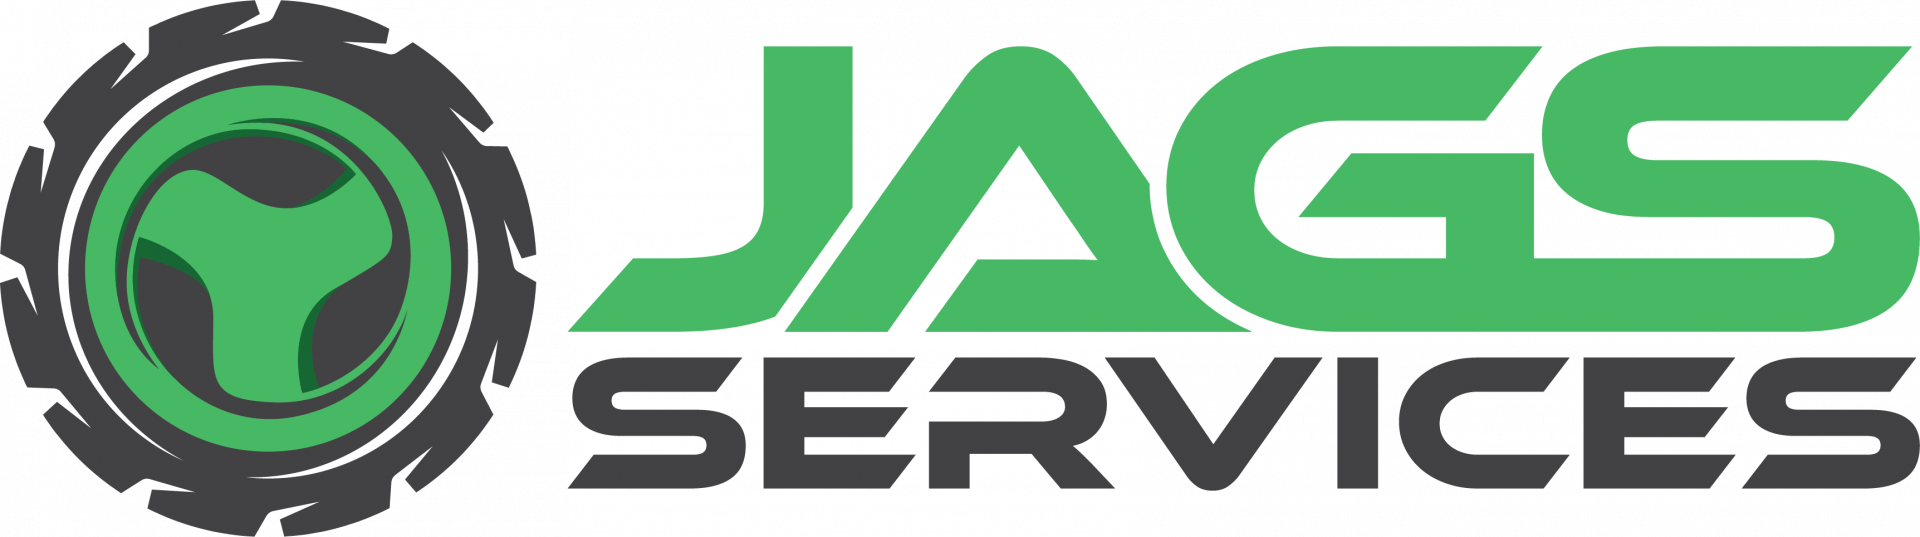 Logotipo JAGS SERVICES